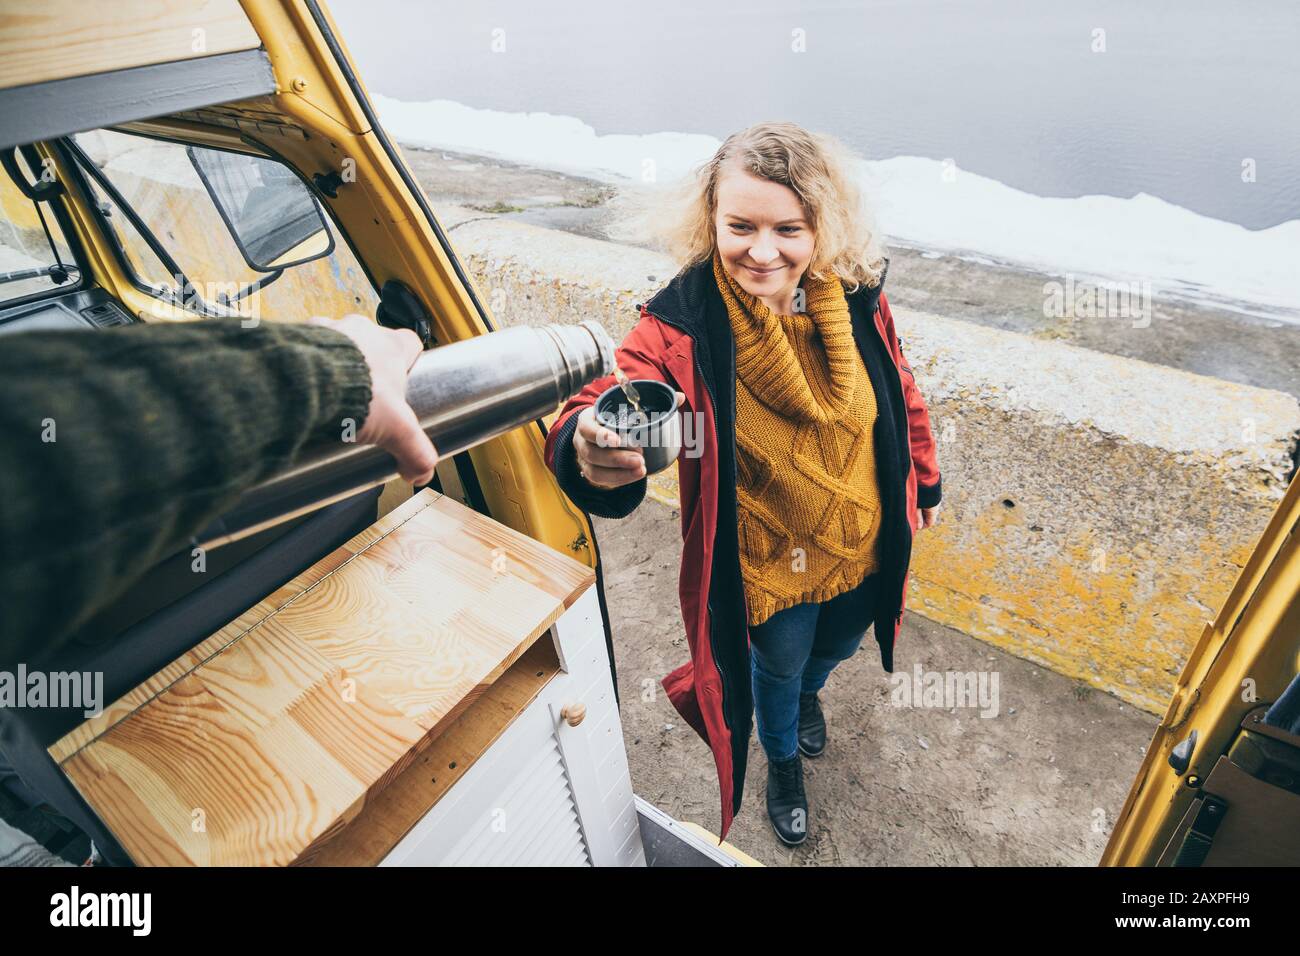 Young blond woman standing next to camper van overlooking the frozen winter sea. View through the open door. Stock Photo